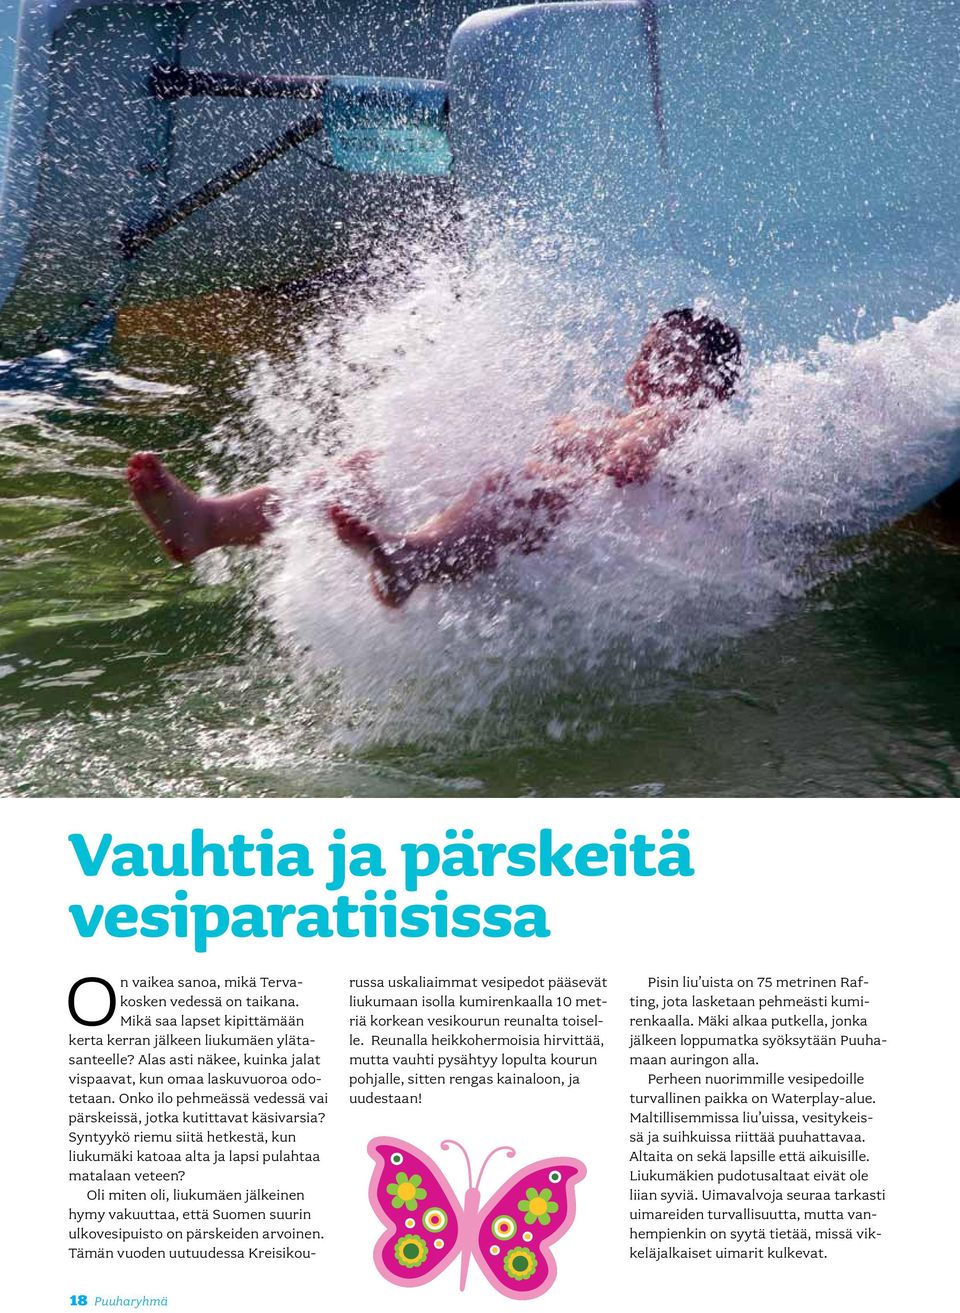 Syntyykö riemu siitä hetkestä, kun liukumäki katoaa alta ja lapsi pulahtaa matalaan veteen? Oli miten oli, liukumäen jälkeinen hymy vakuuttaa, että Suomen suurin ulkovesipuisto on pärskeiden arvoinen.